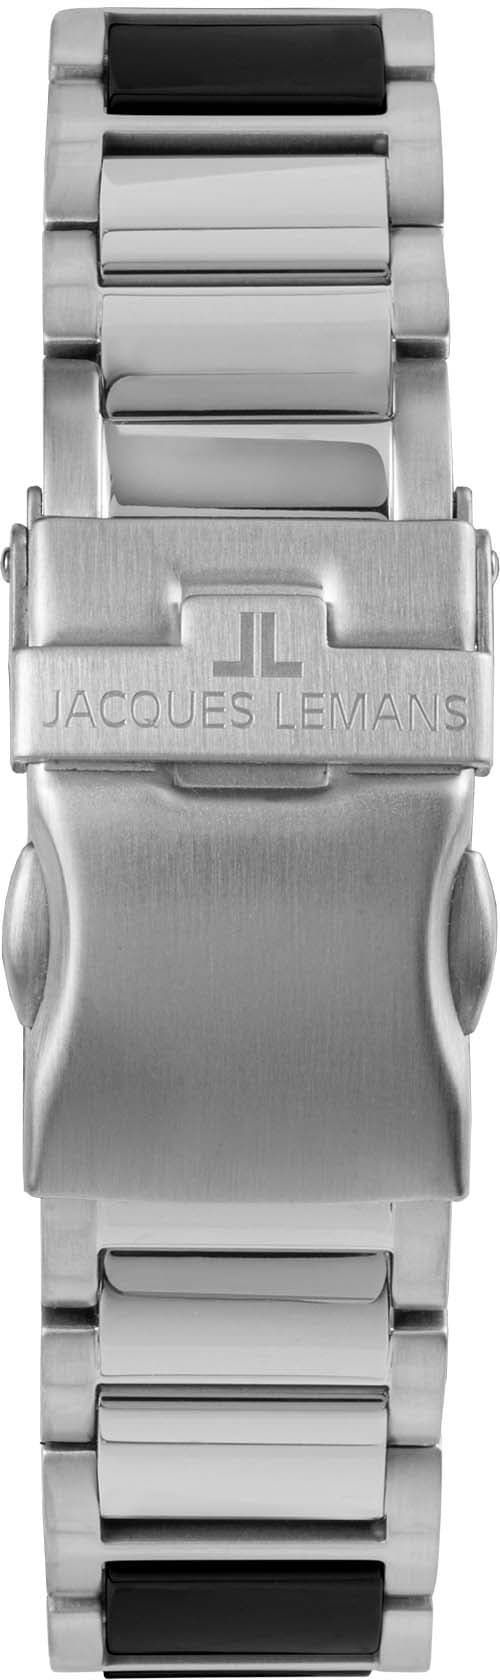 »Liverpool, BAUR kaufen 42-12A« Lemans Jacques online Keramikuhr |